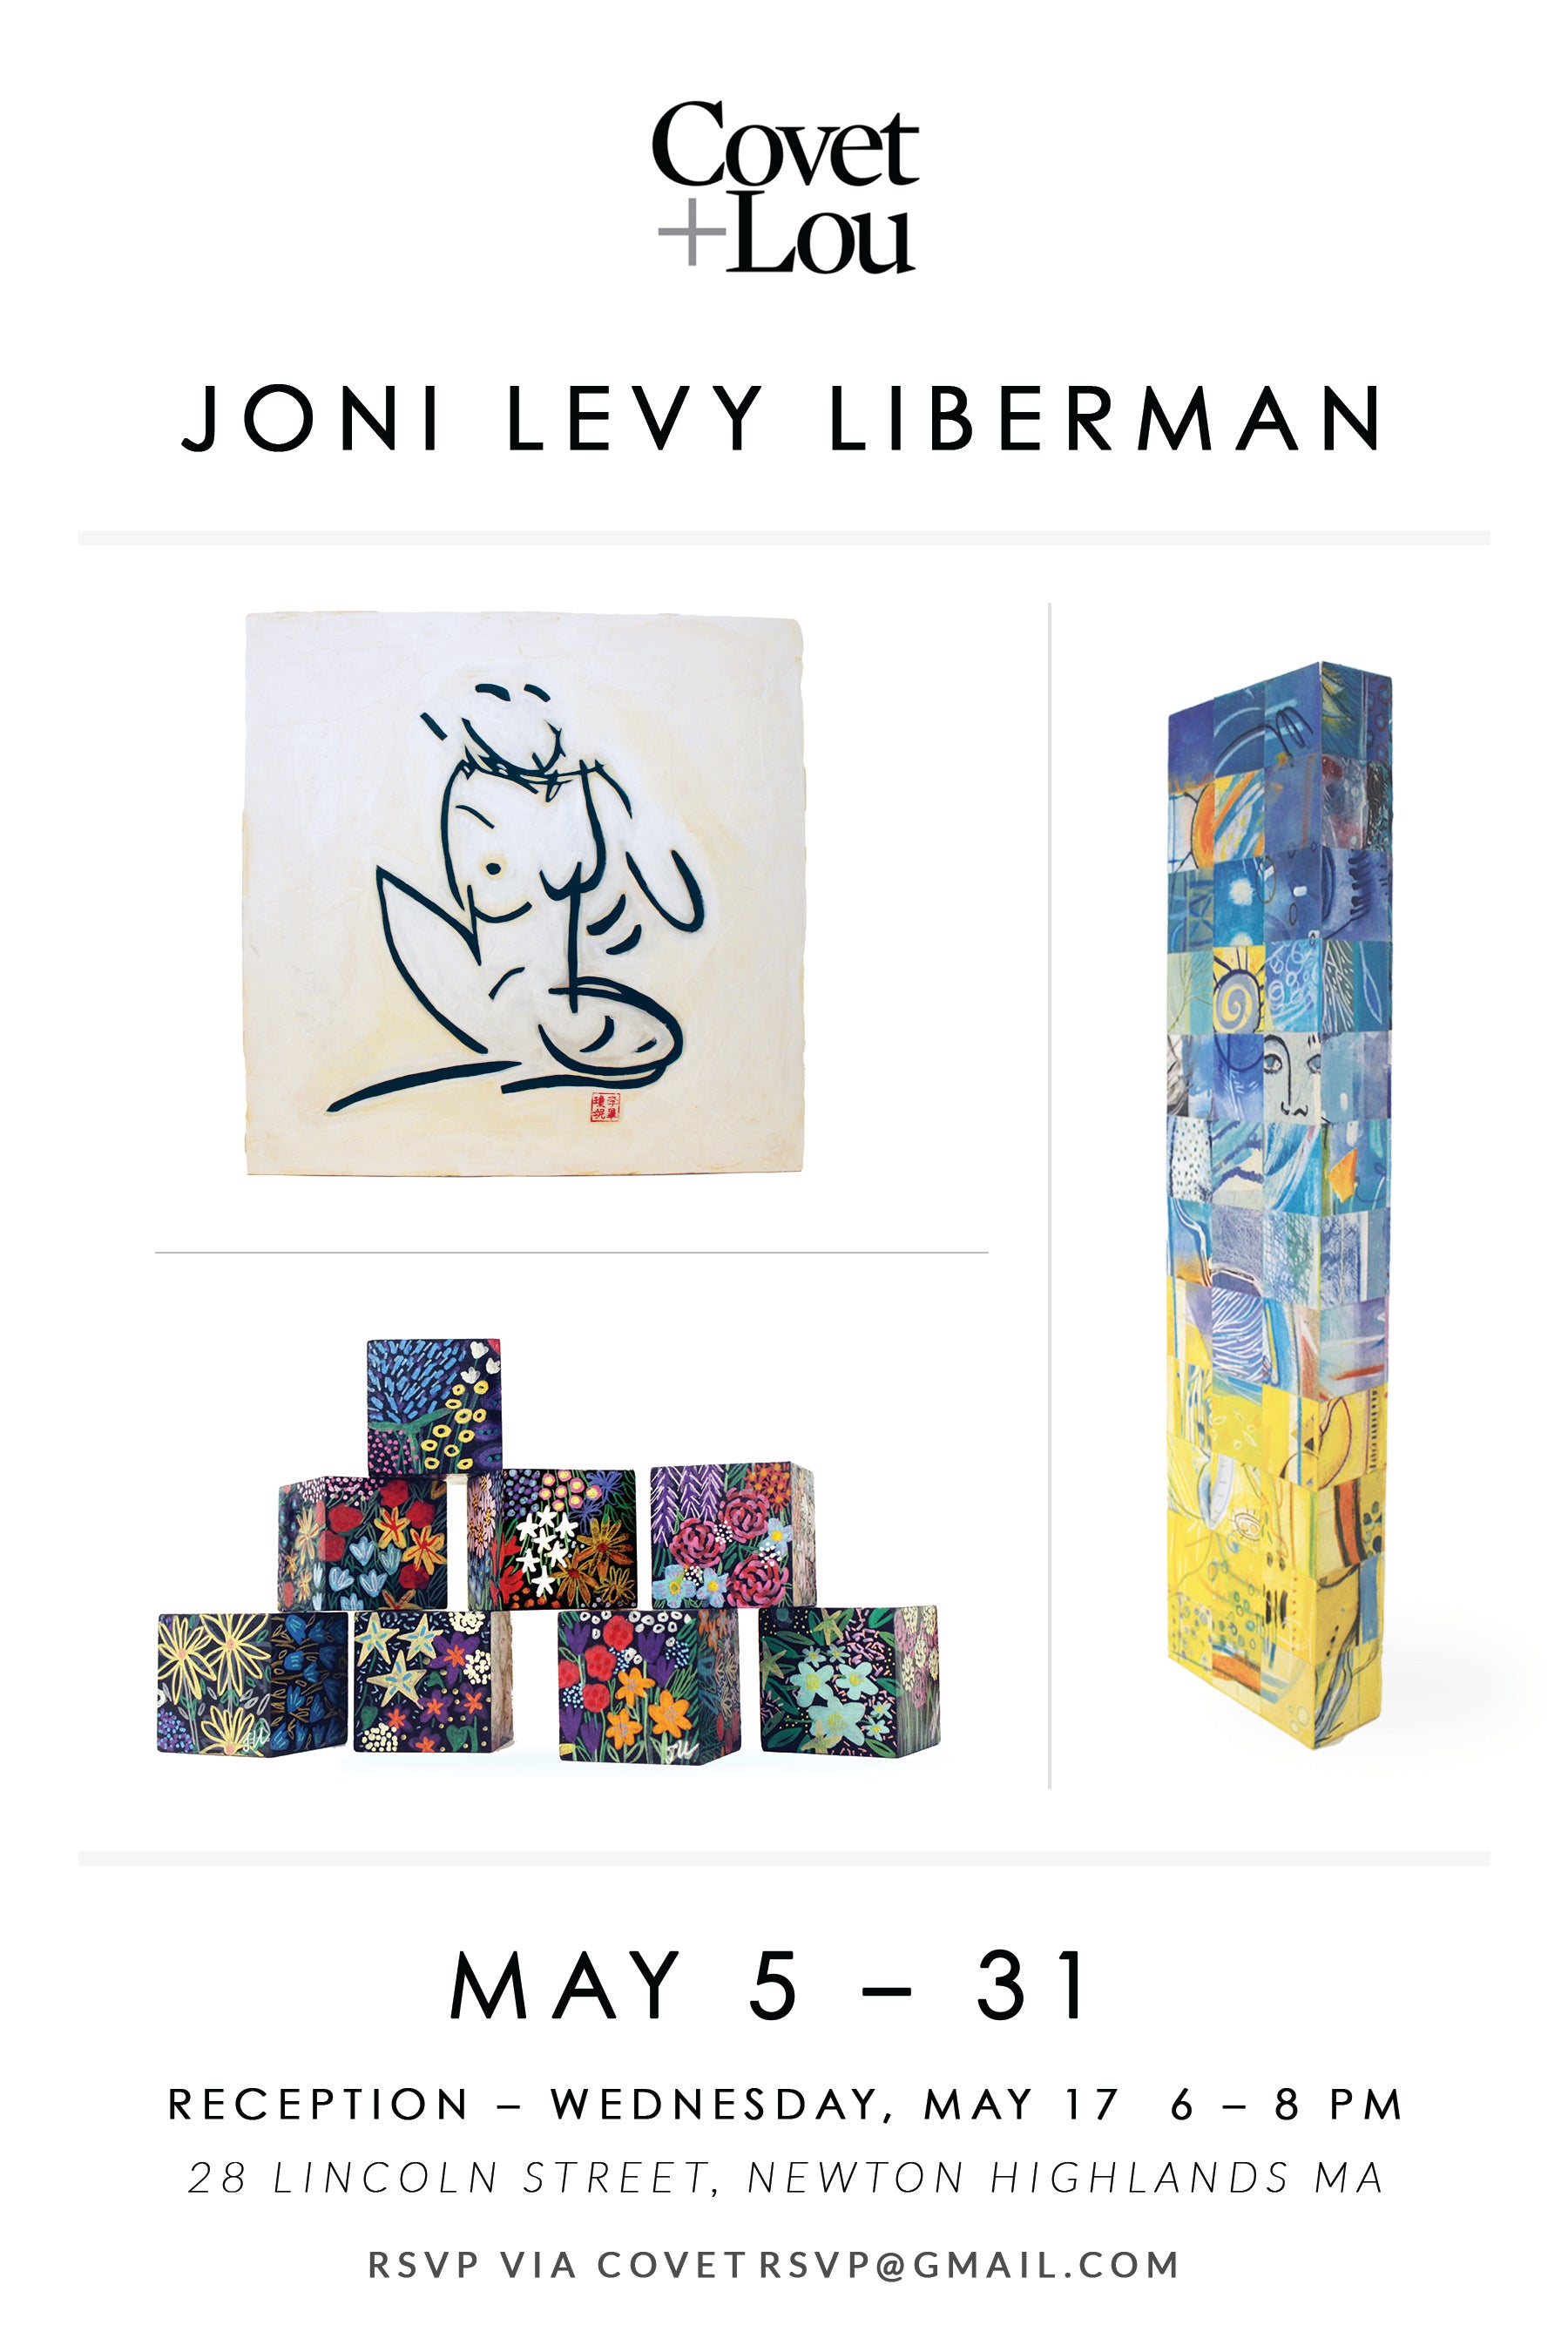 Joni Levy Liberman at Covet + Lou